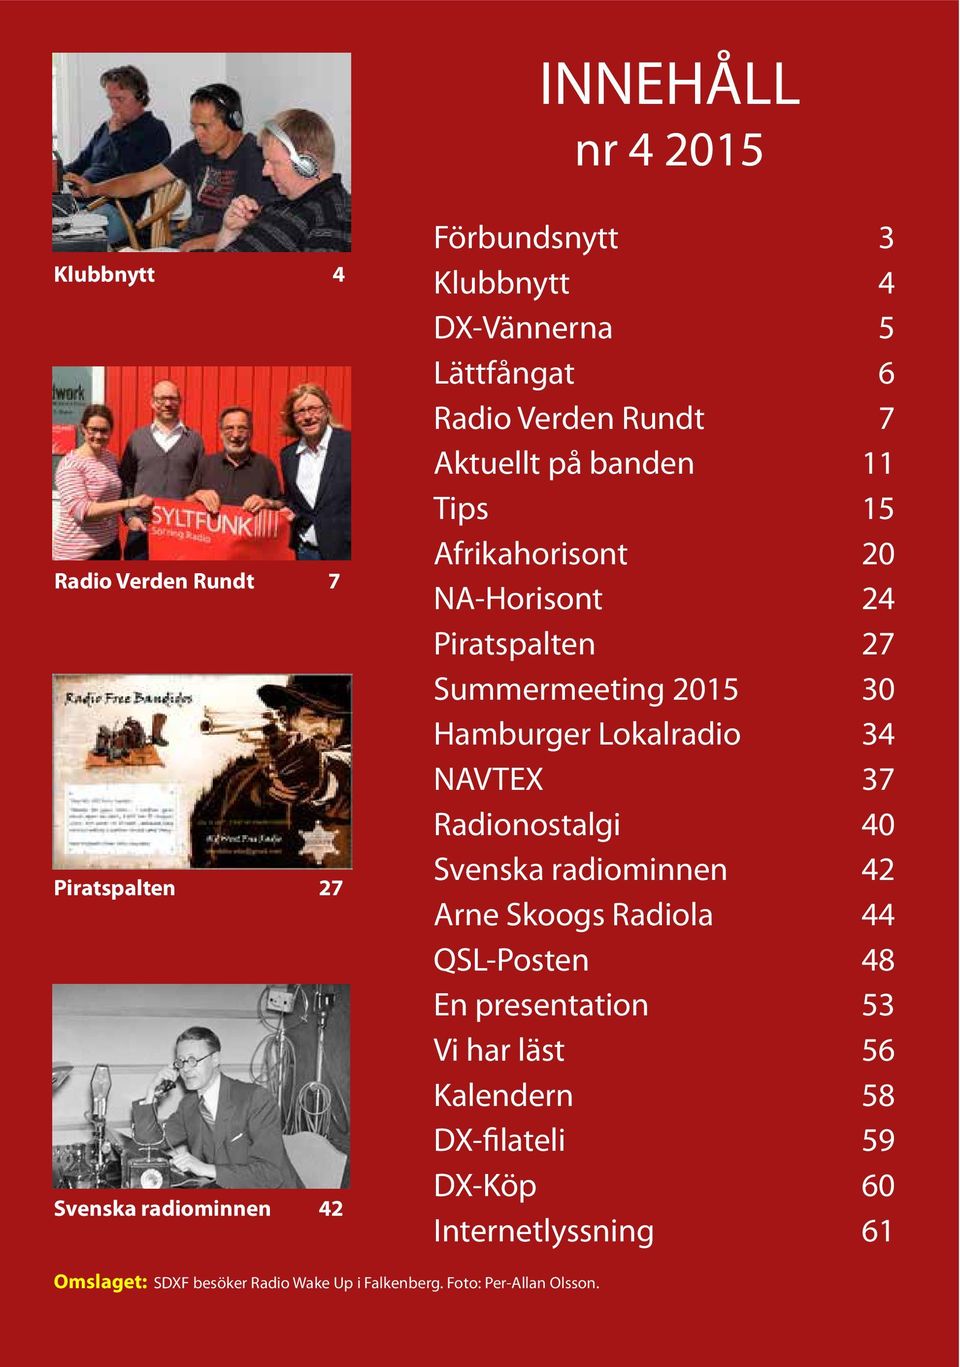 Hamburger Lokalradio 34 NAVTEX 37 Radionostalgi 40 Svenska radiominnen 42 Arne Skoogs Radiola 44 QSL-Posten 48 En presentation 53 Vi